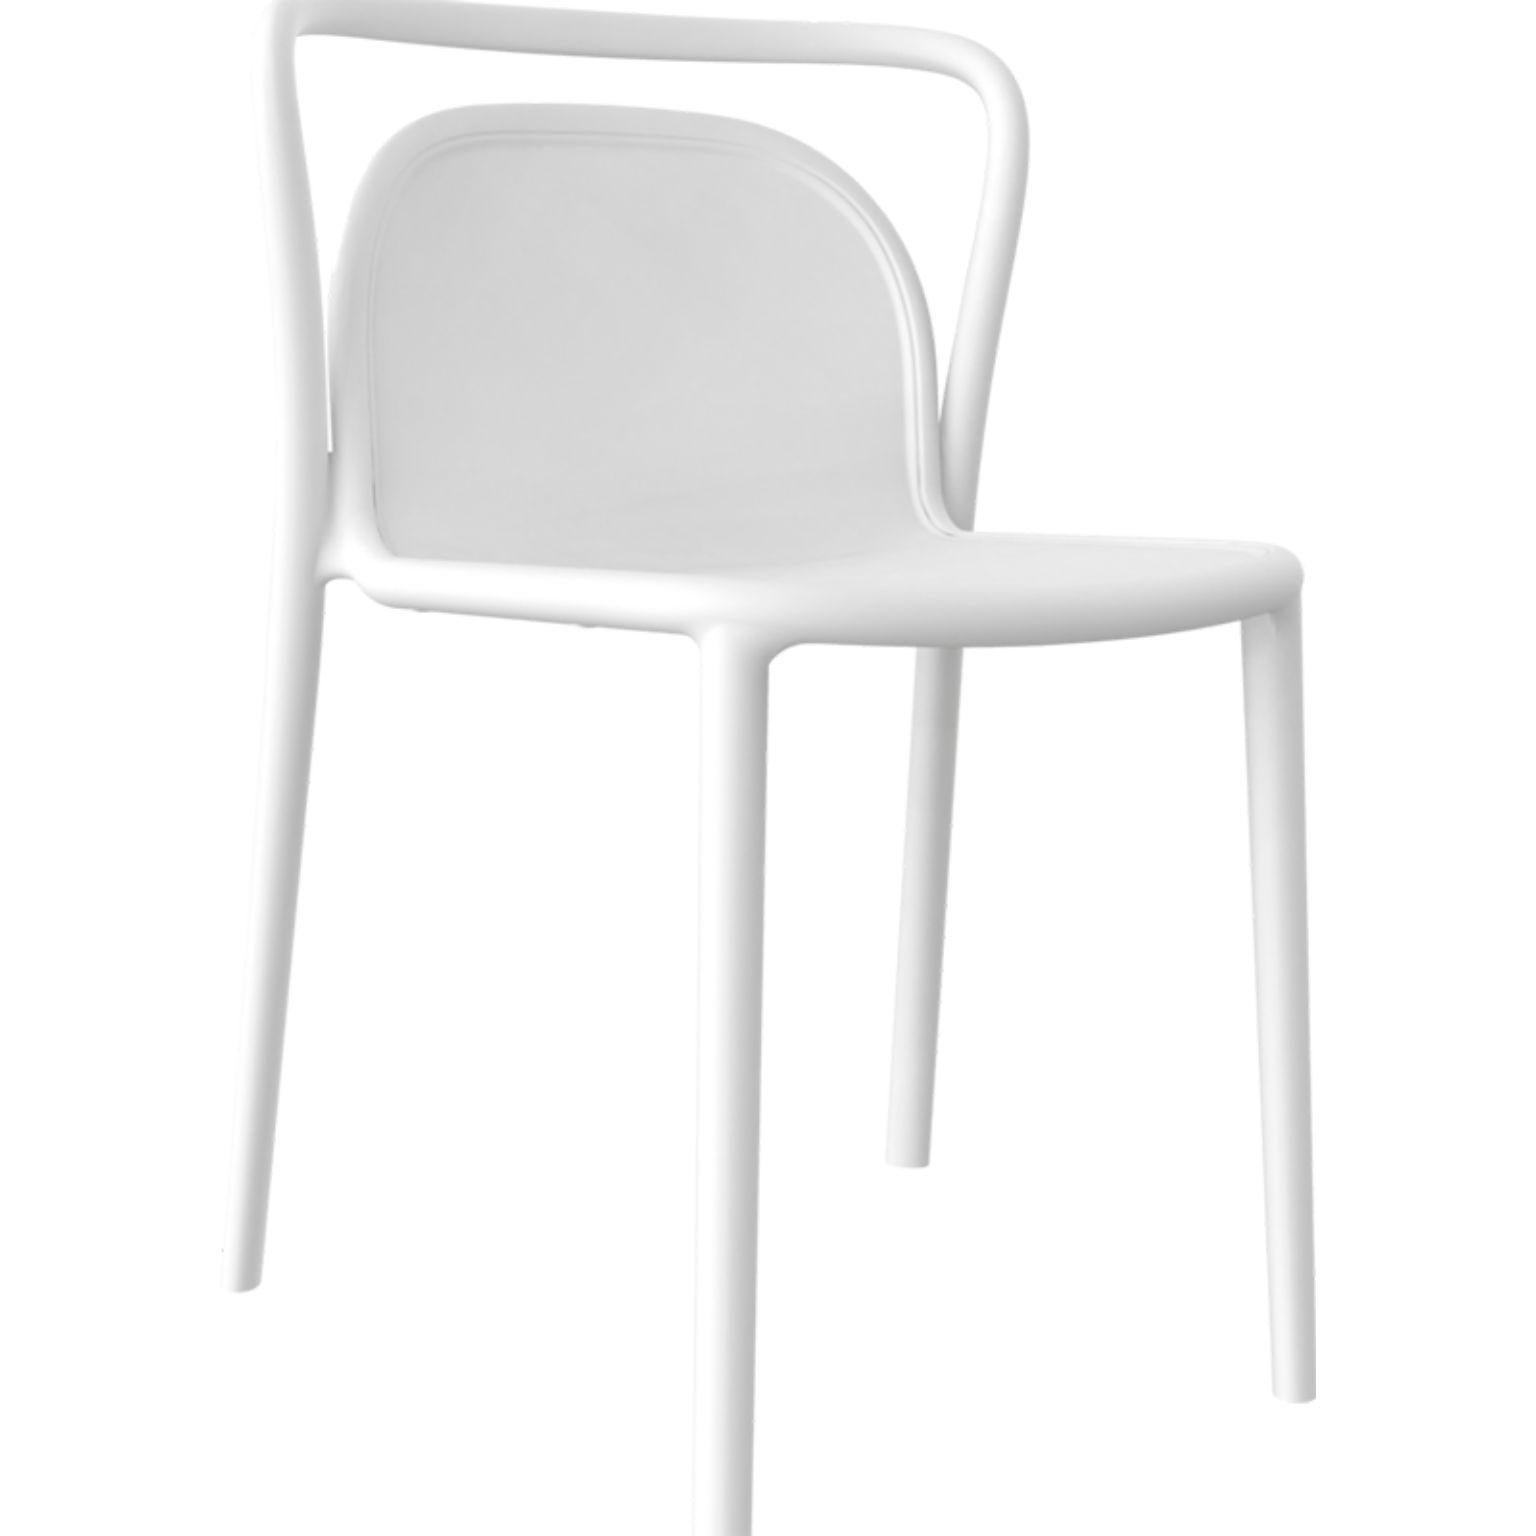 4er set stühle Classe weiß von MOWEE
Abmessungen: T52 x B52 x H77 cm (Sitzhöhe 45 cm)
MATERIAL: Polypropylenharz mit Glasfasern.
Gewicht: 4.6 kg
Auch in verschiedenen Farben erhältlich. Optional kann ein Kissen hinzugefügt werden. 

Classe ist